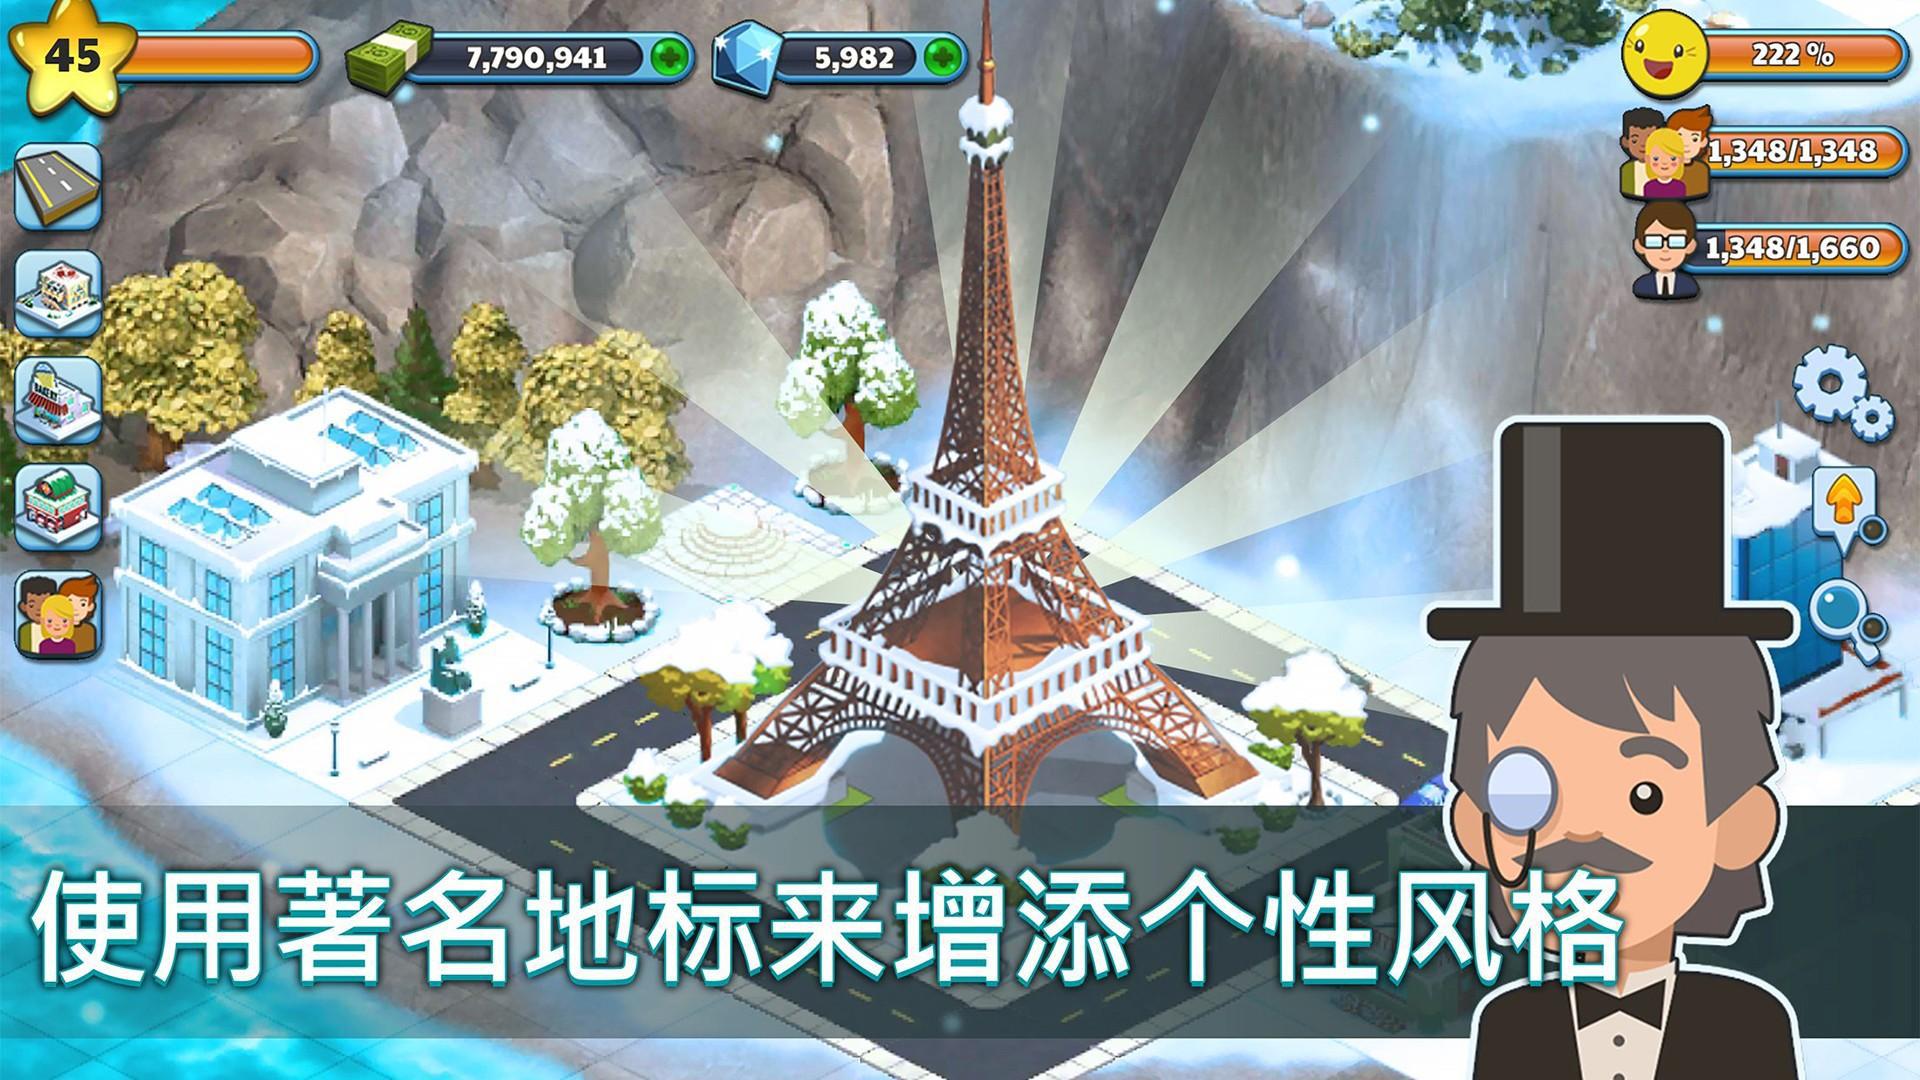 雪城-冰雪村庄世界 Snow Town Ice Village_游戏简介_图3